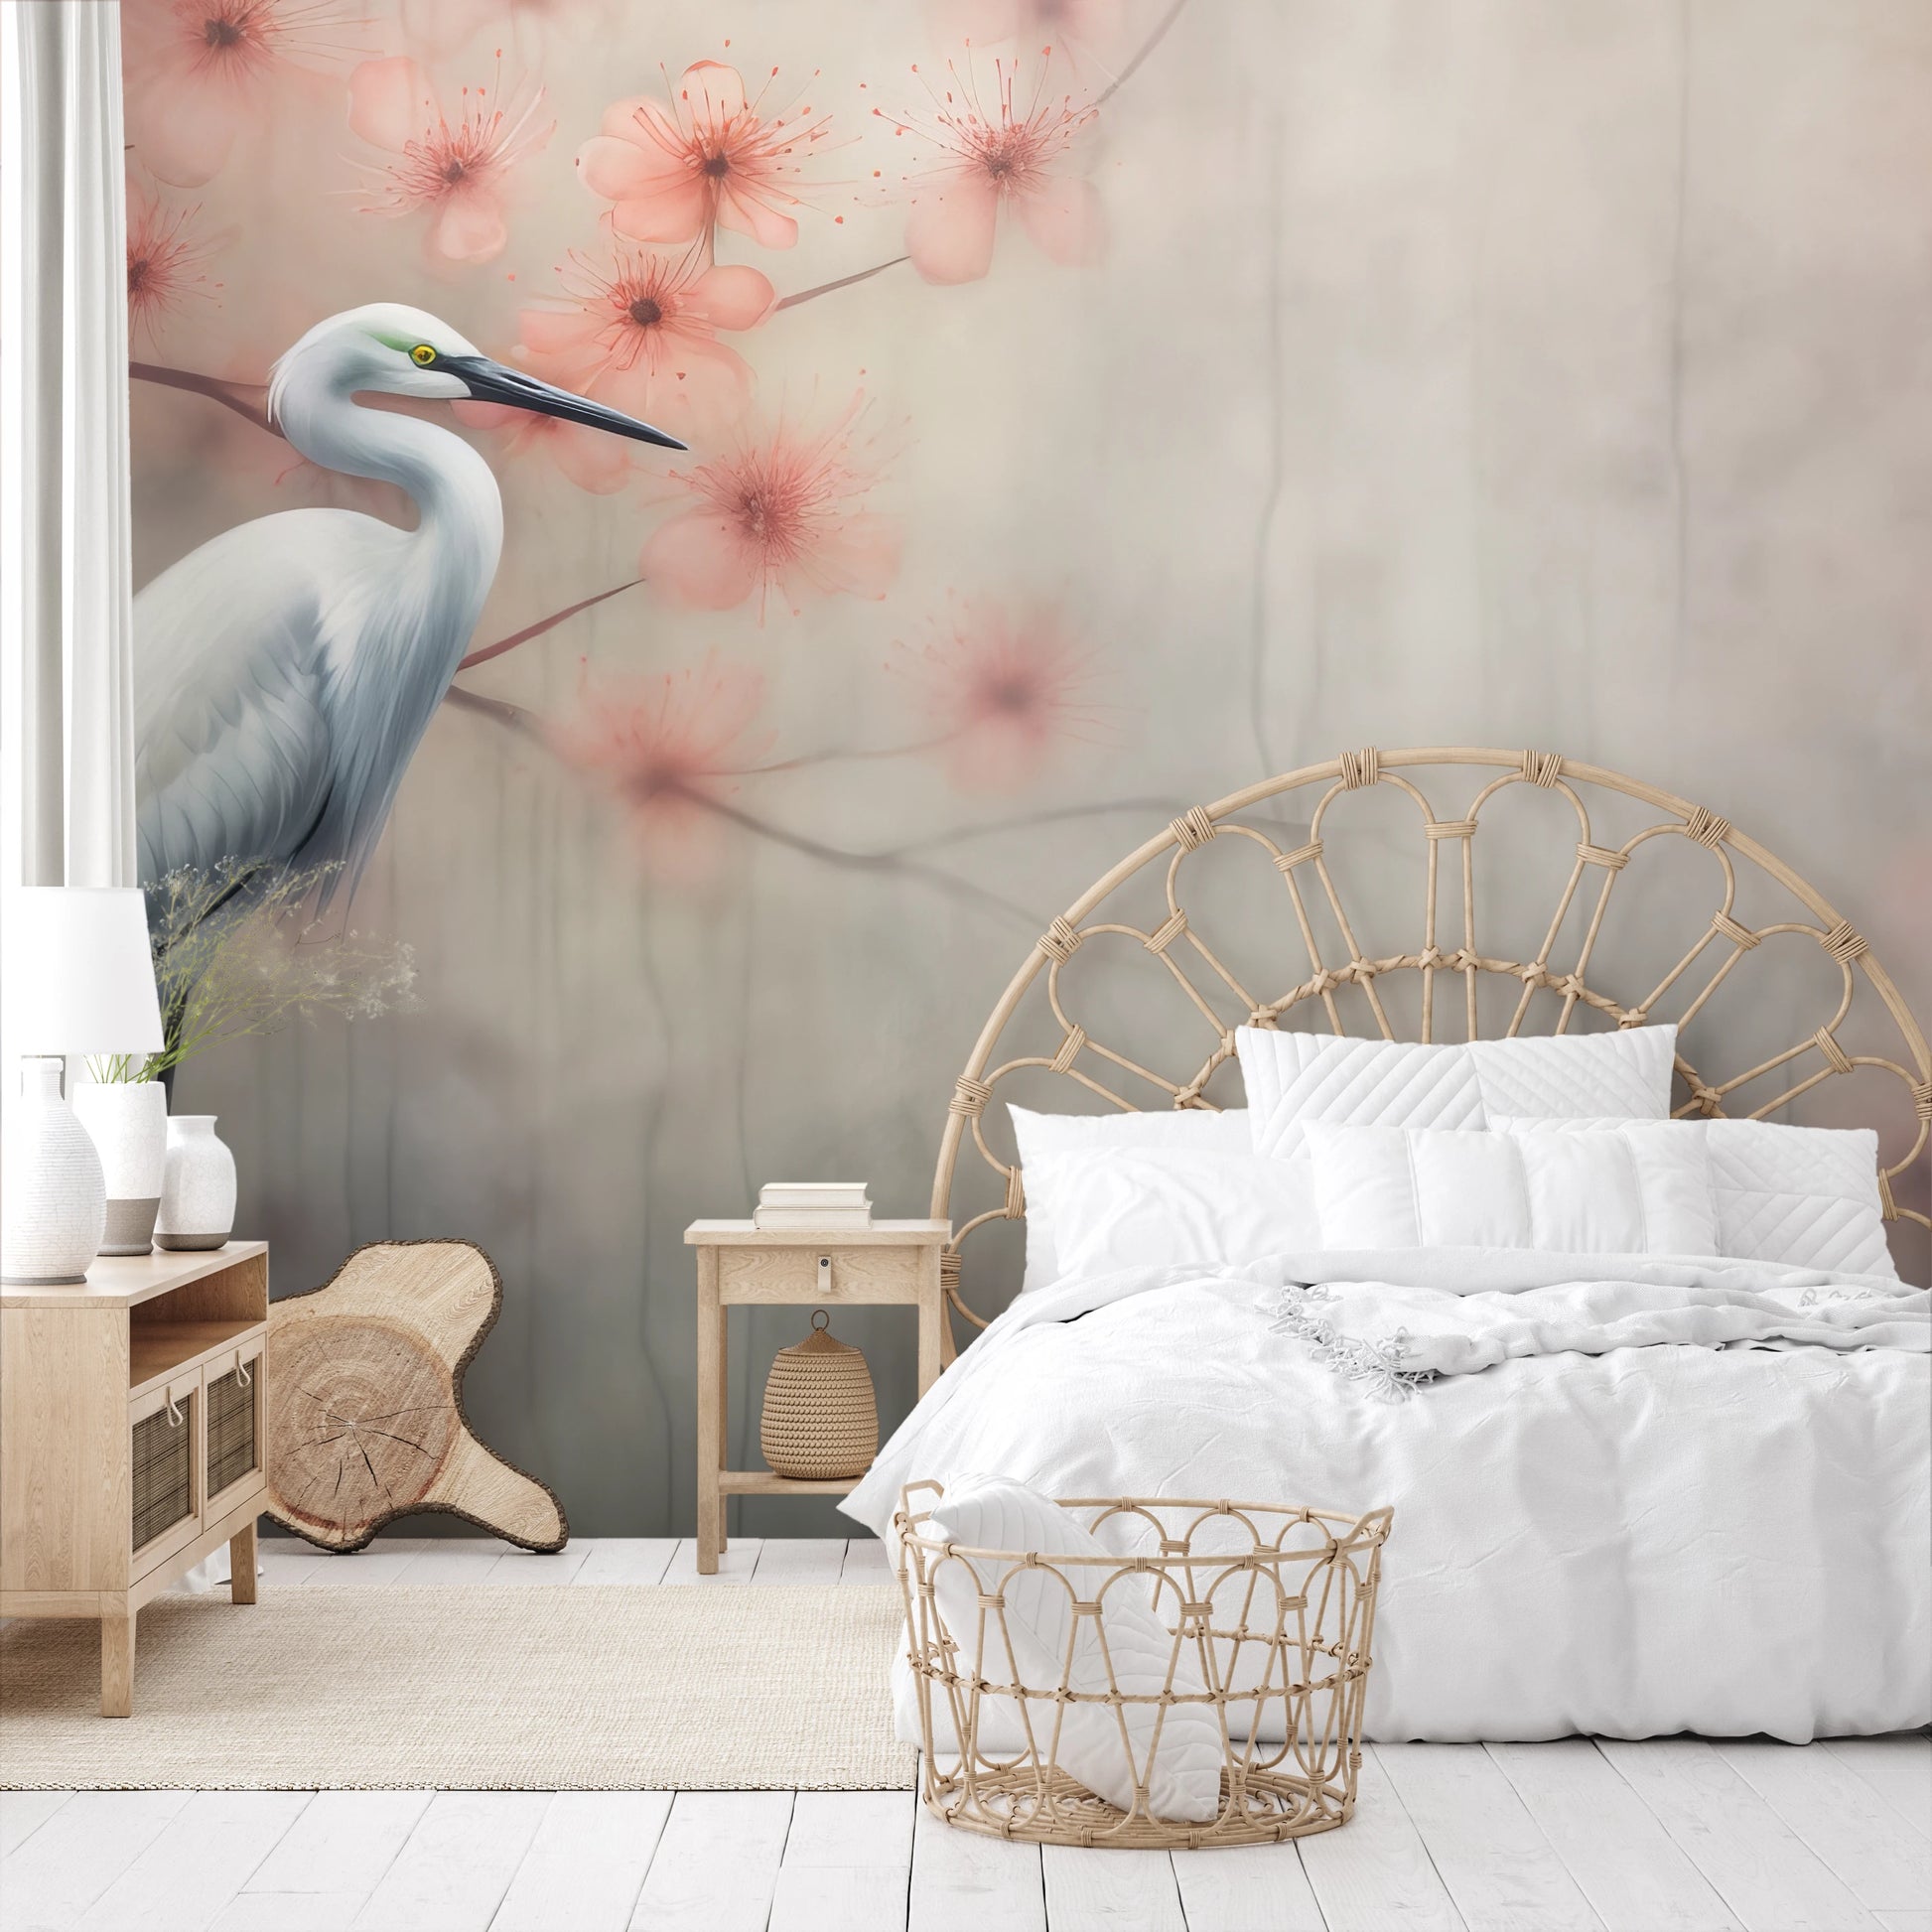 Wzór fototapety artystycznej o nazwie Peaceful Heron pokazanej w aranżacji wnętrza.